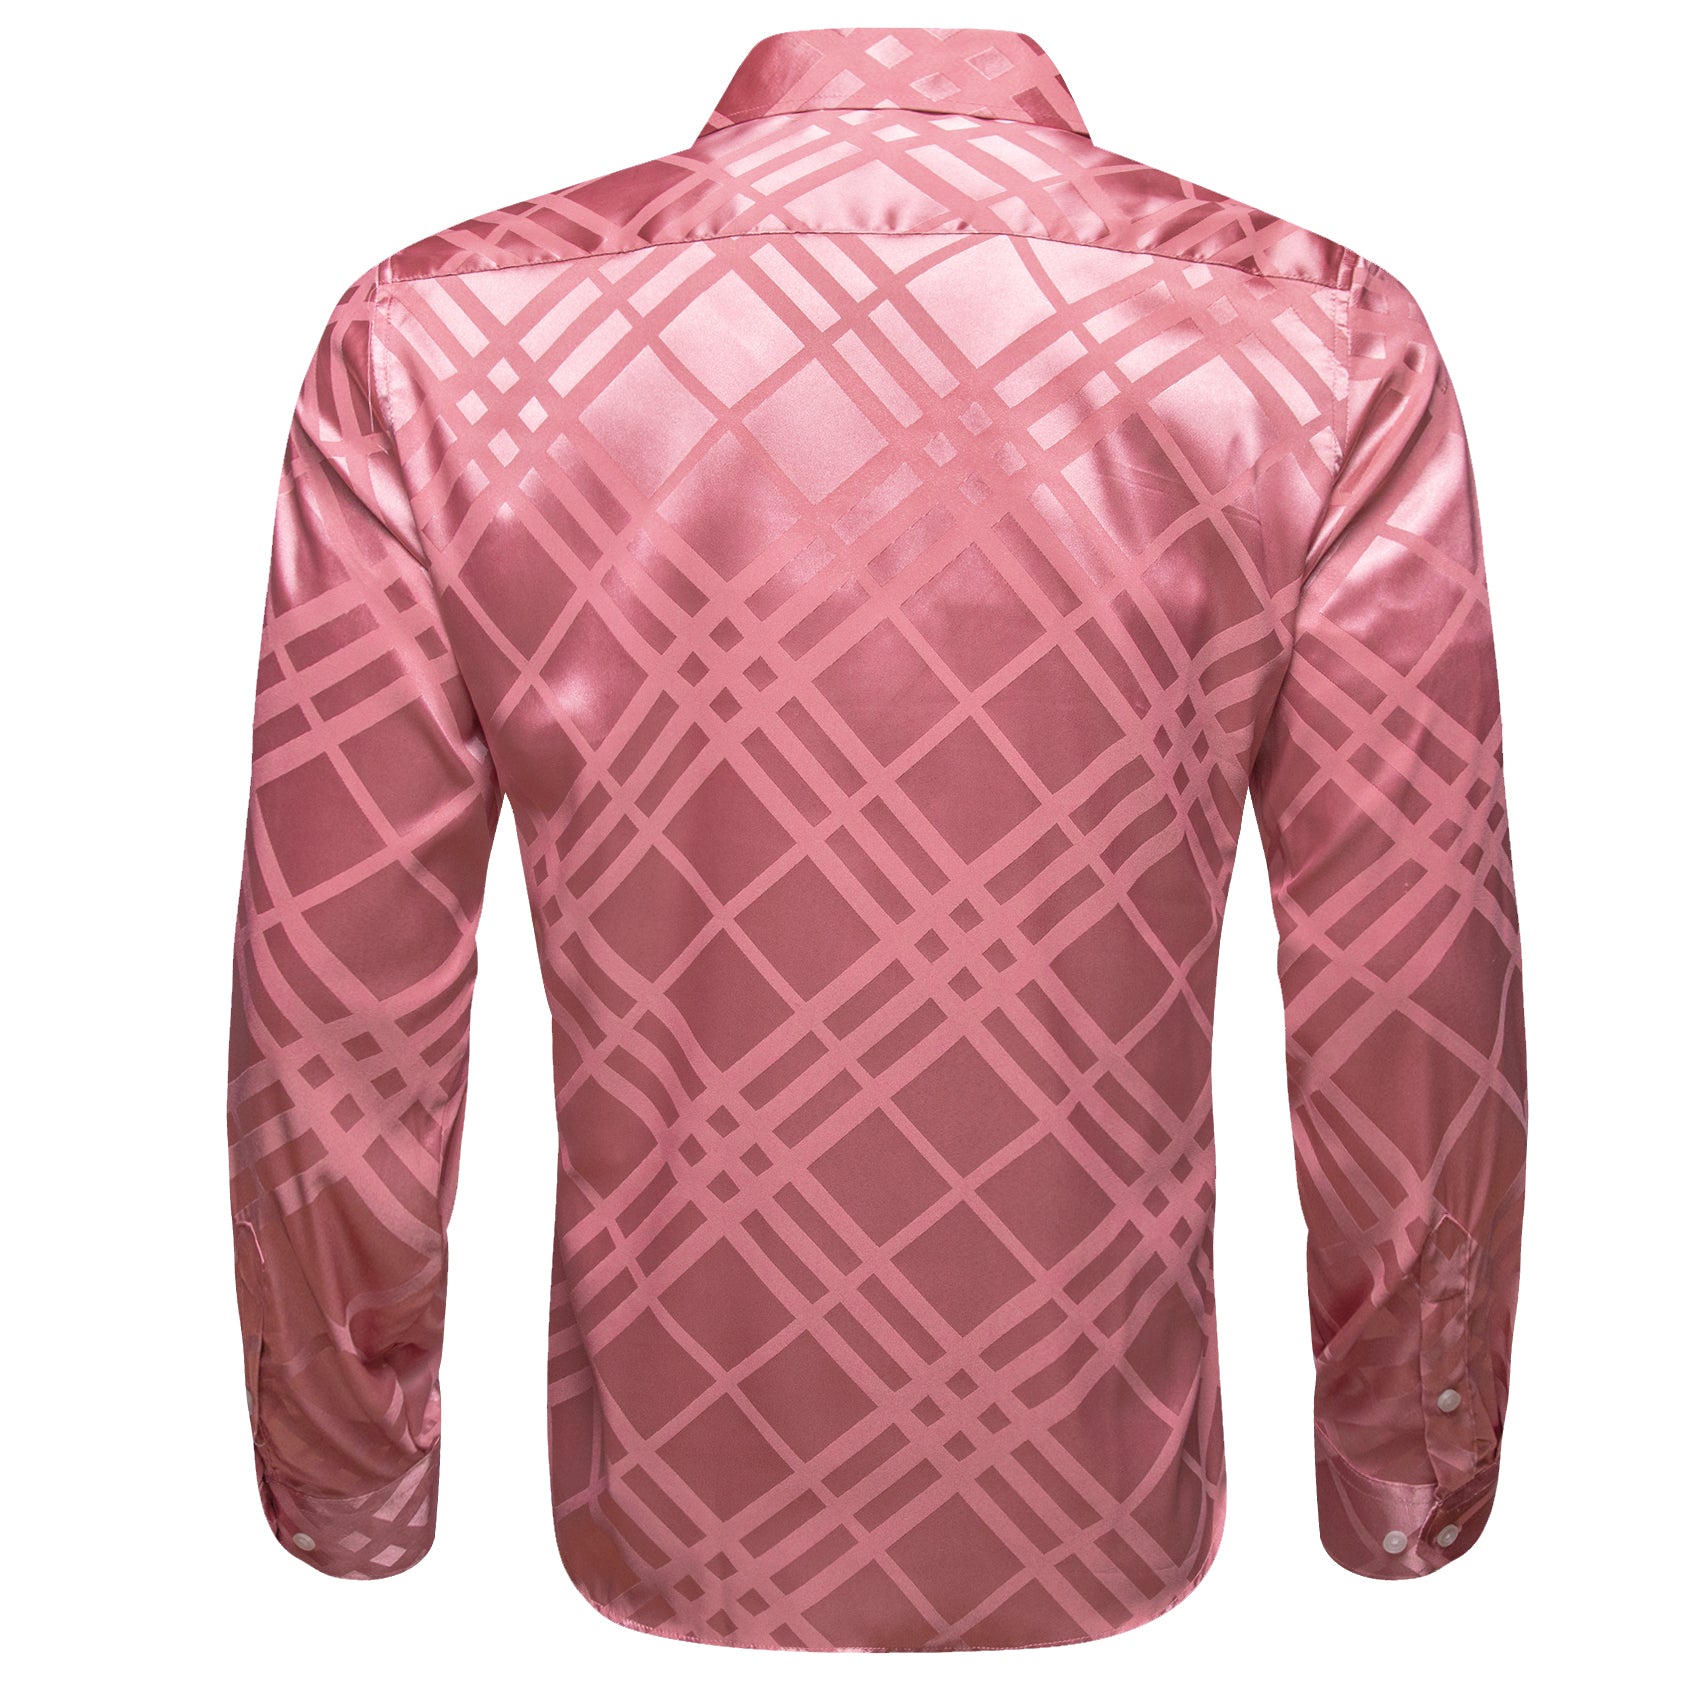 Barry.wang Pink Striped Silk Men's Shirt